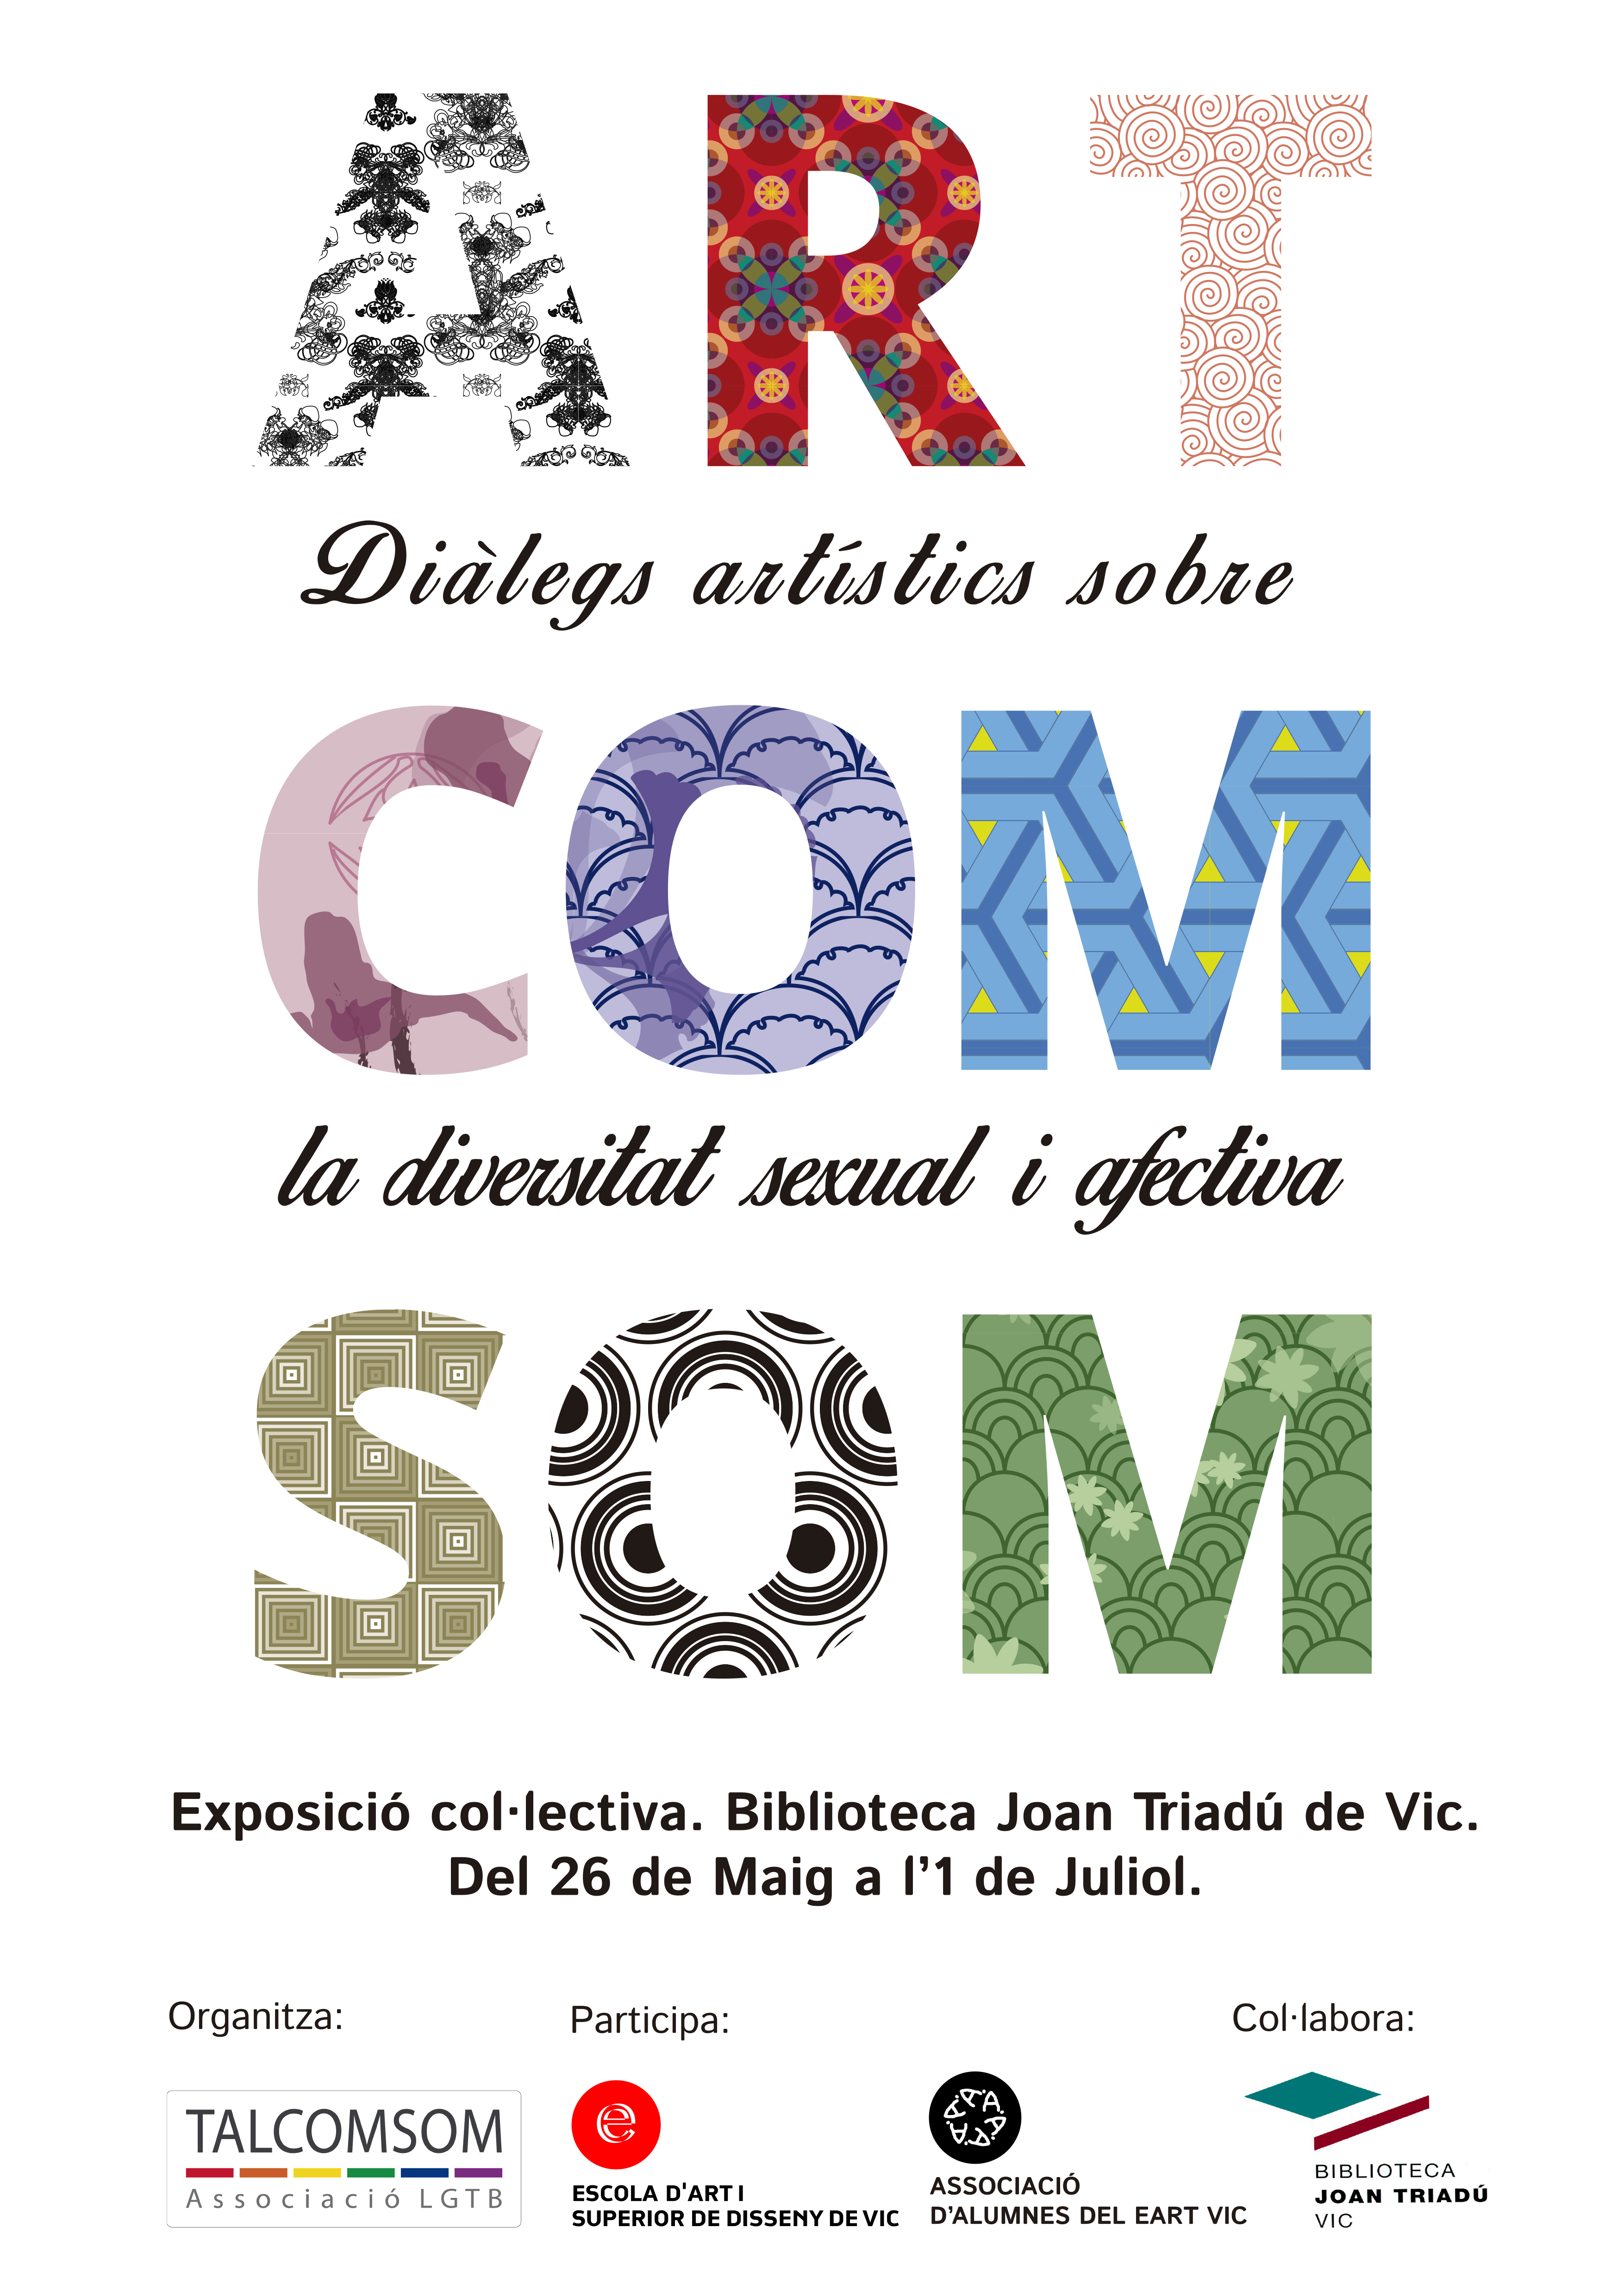 Fins l’1 de juliol a la Biblioteca Joan Triadú – Exposició “Artcomsom Diàlegs artístics sobre la diversitat sexual i afectiva”